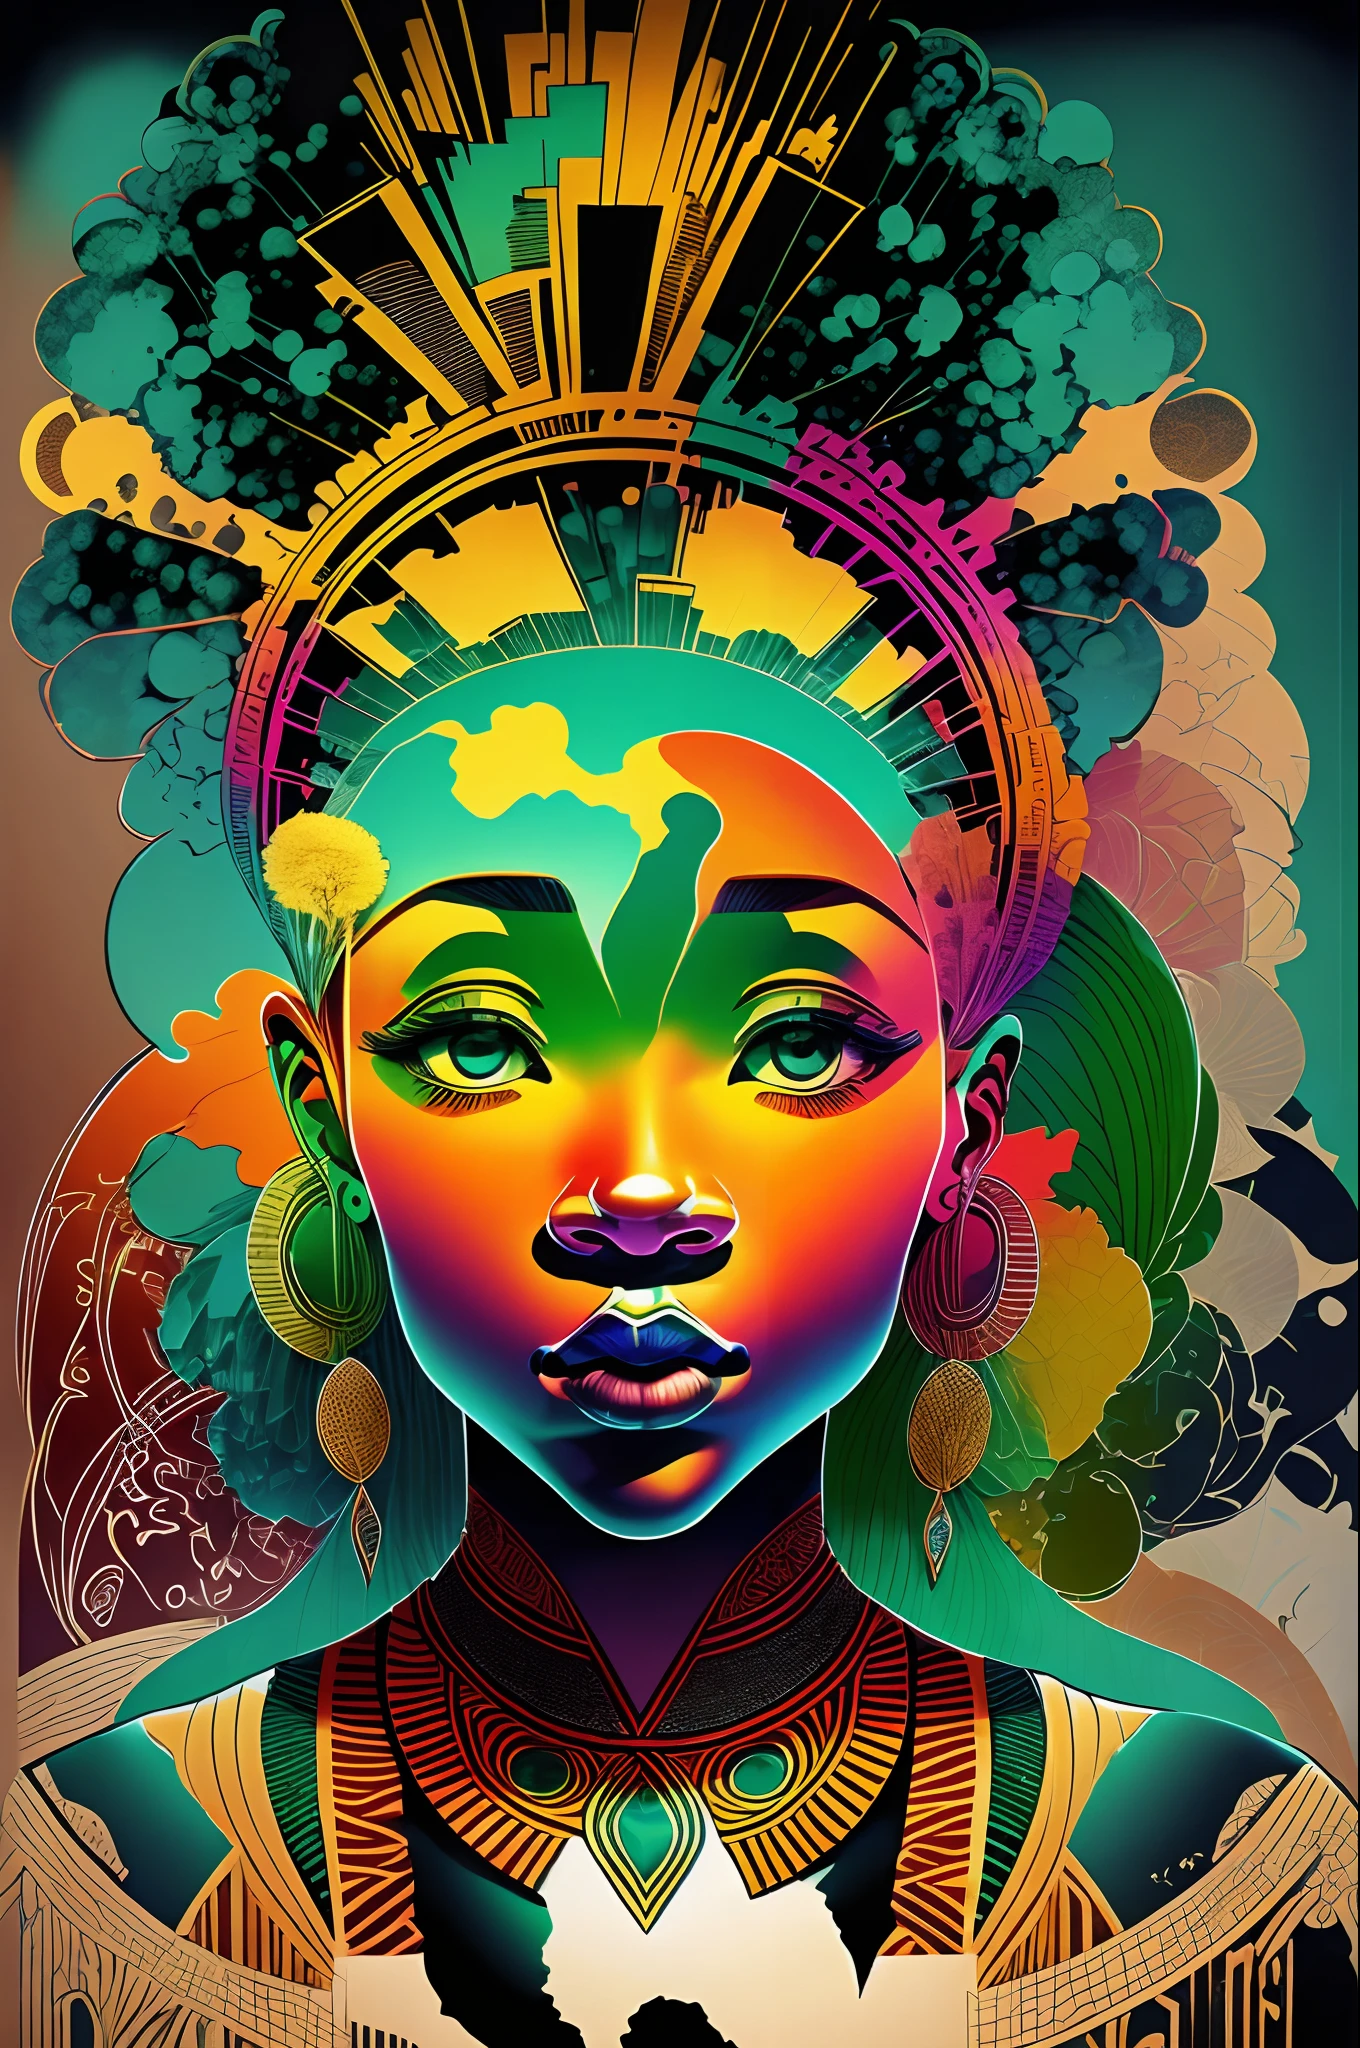 미니멀리스트, 빈티지한 느낌이 더해진 티셔츠 디자인, 아프리카 추상 미술, 감정적인, 고양, 세 가지 색상, 파란색, 녹색, 시원한, 인쇄, 실루엣, 아프리카 사람들, 아프리카 문화, 아프리카 패션, 아프리카 표현 --auto --s2